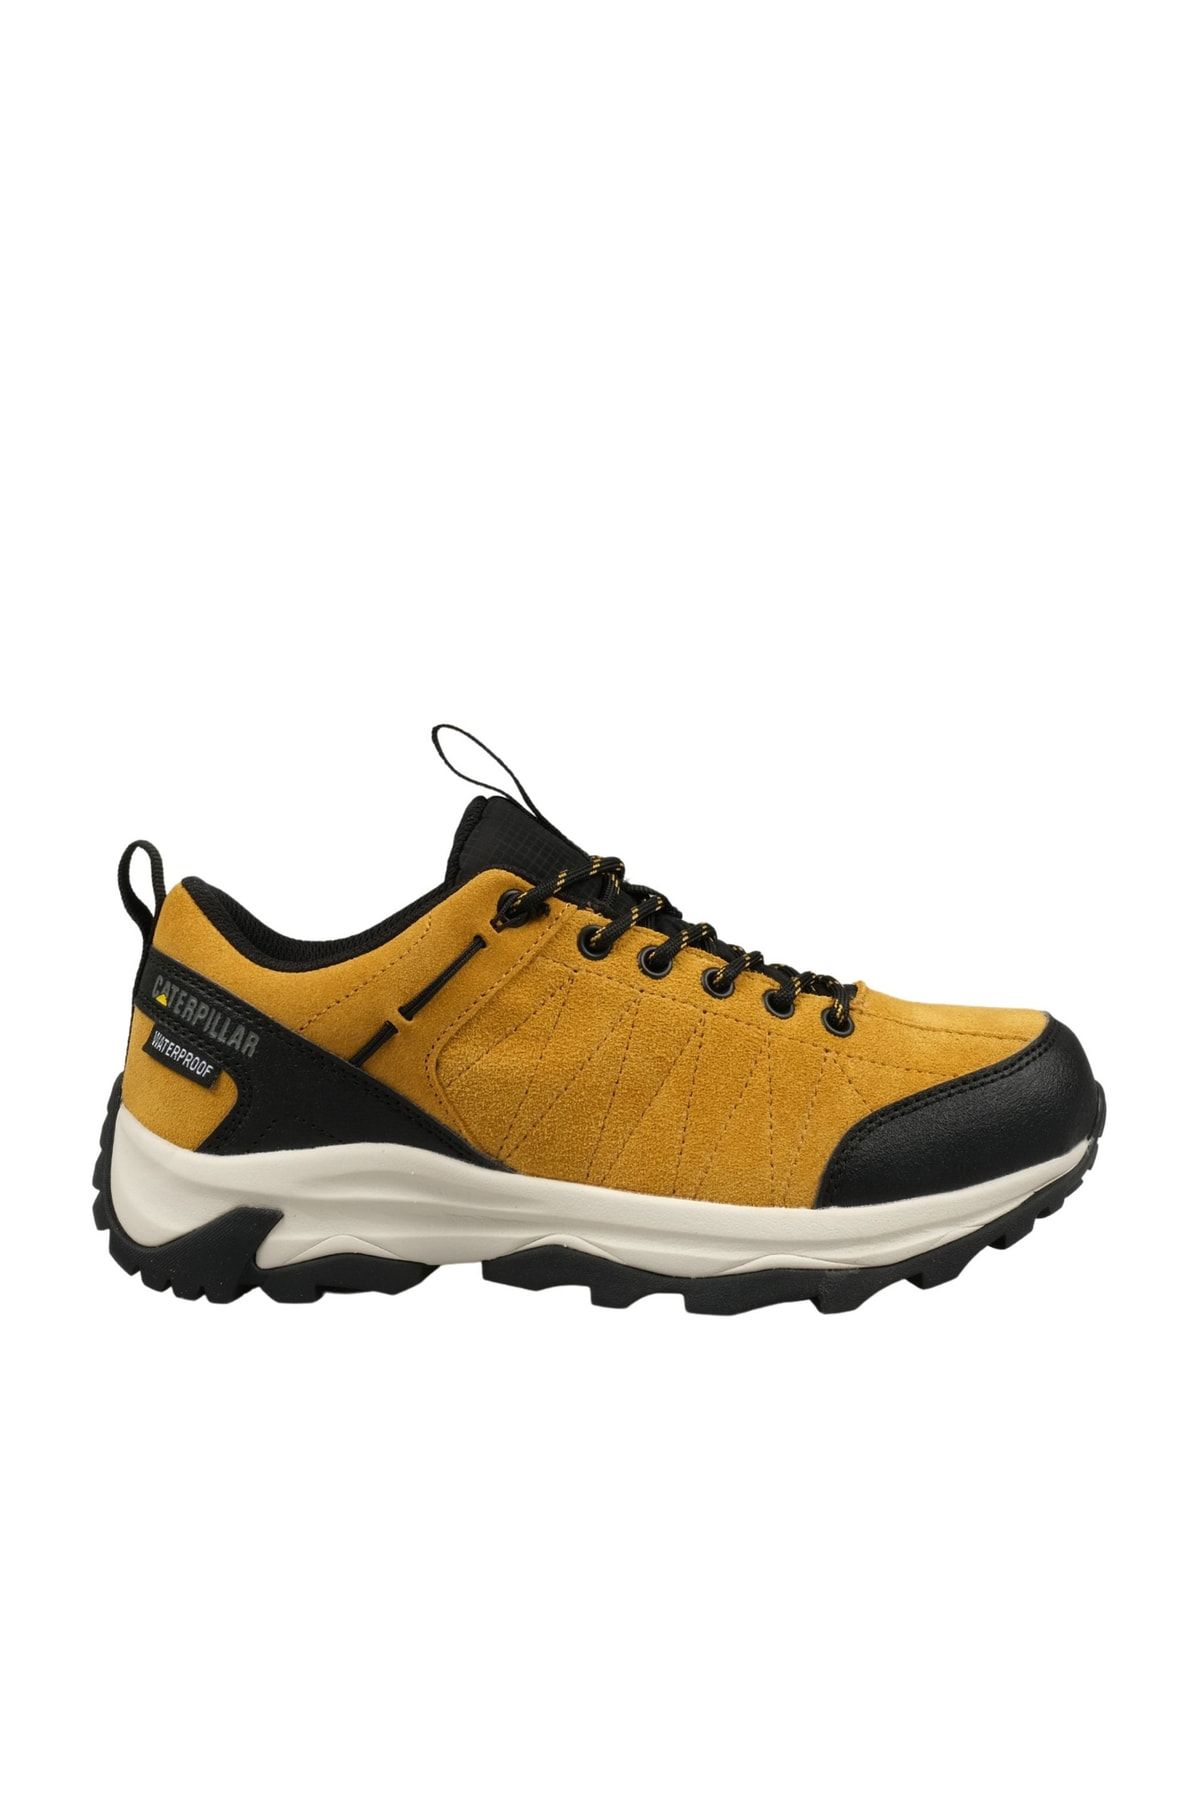 Caterpillar Kadın Sarı Outdoor Ayakkabı (011g100008-y0135)